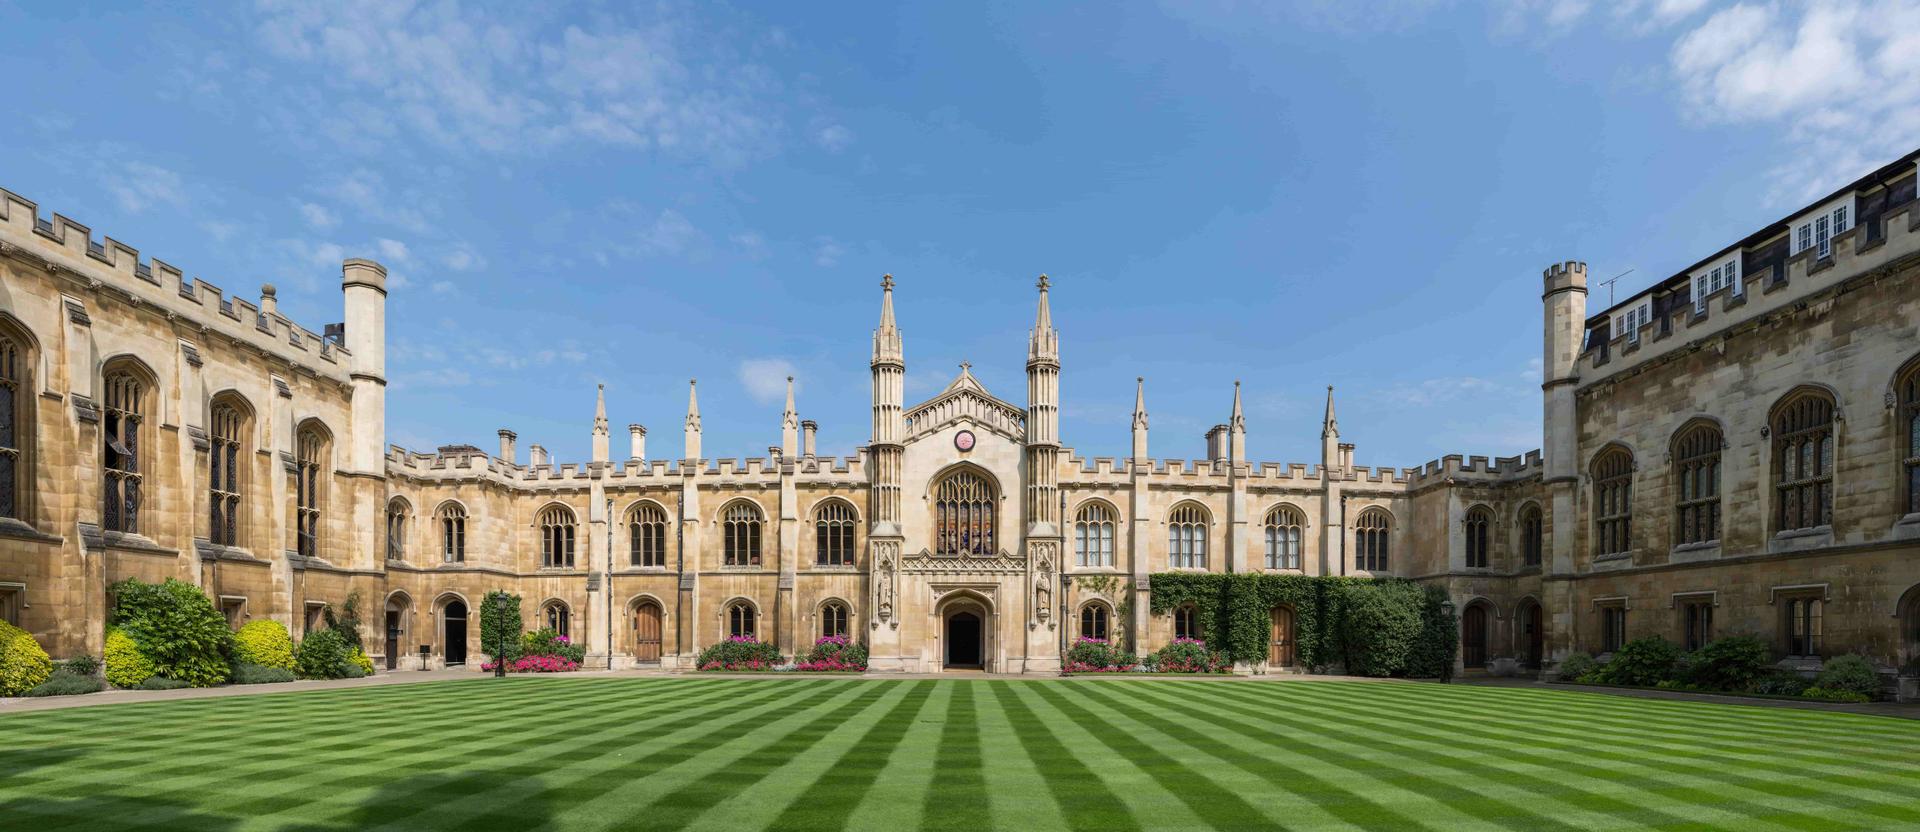 Summer Camp Oxford Royale Academy, Cambridge